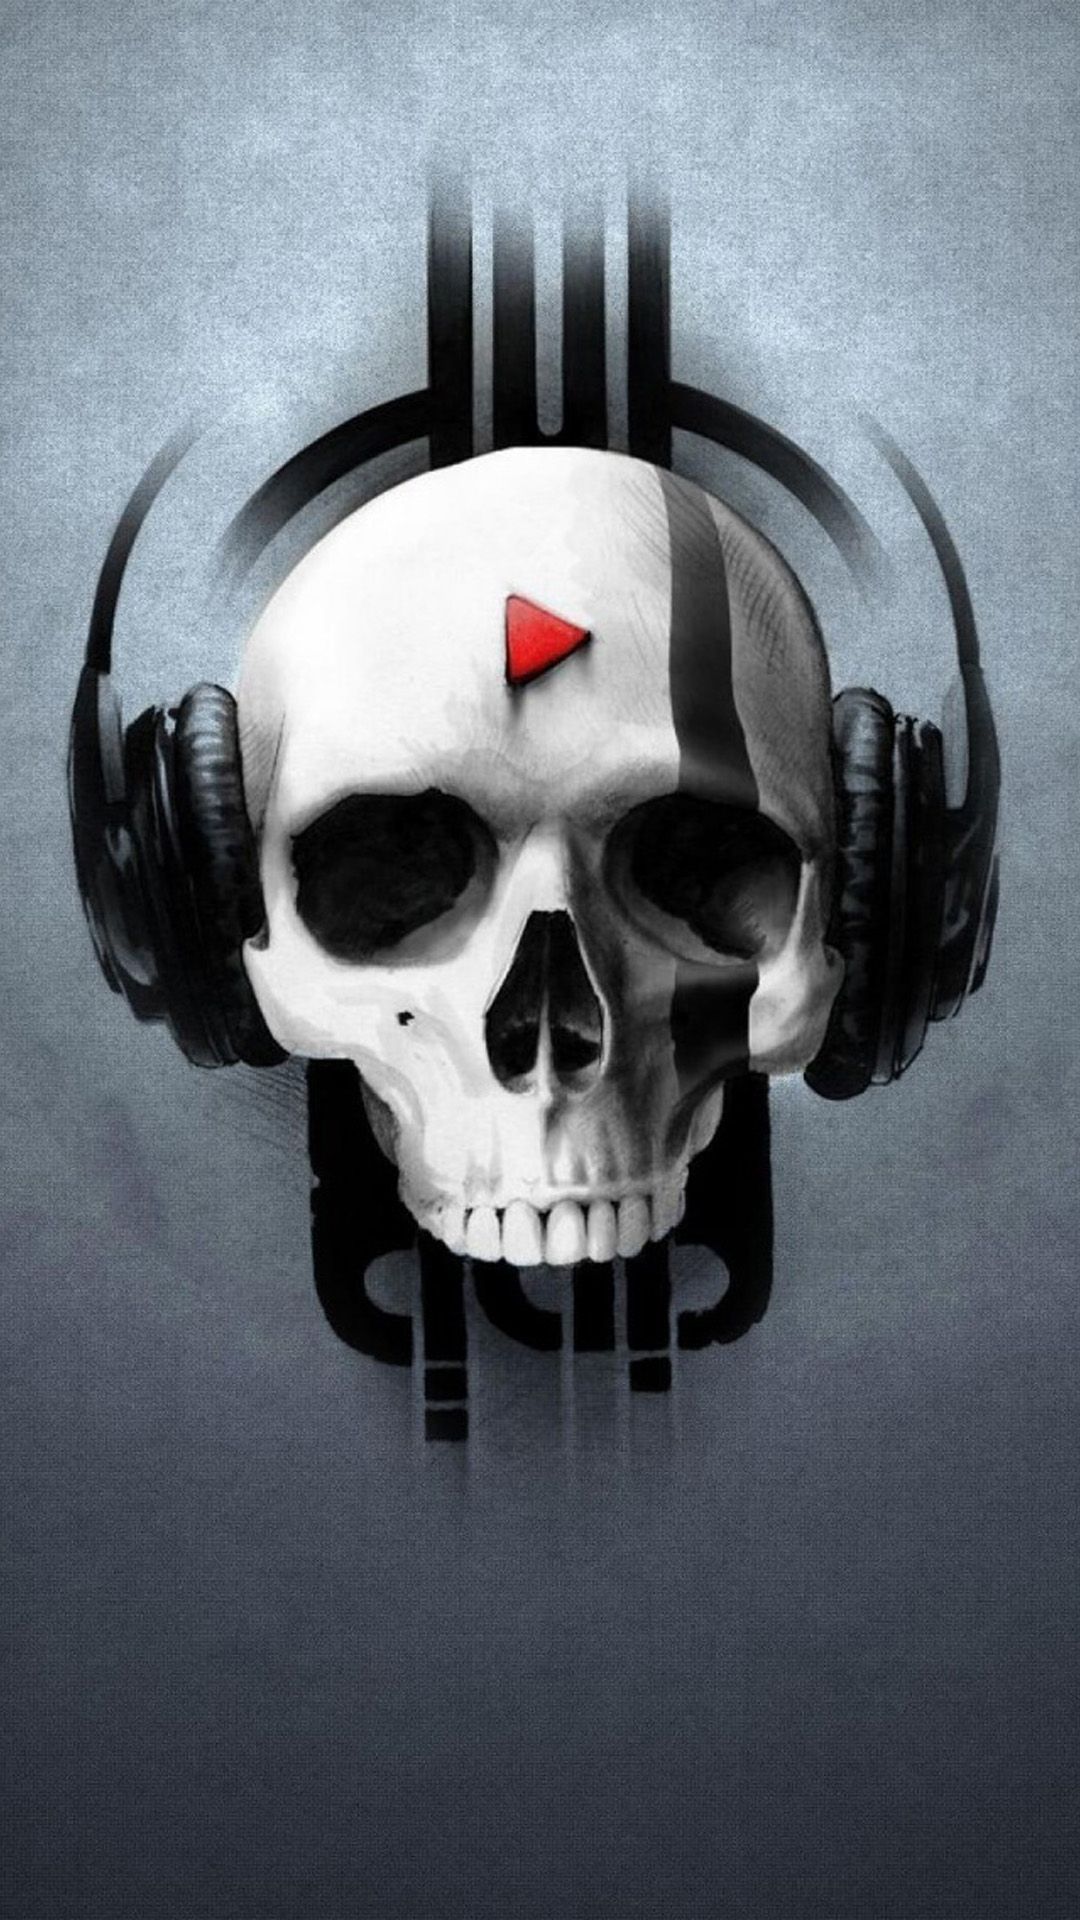 MUSIC IPHONE WALLPAPERS FOR THE MUSIC LOVERS.. Style. Skull wallpaper, Skull art, Skull artwork